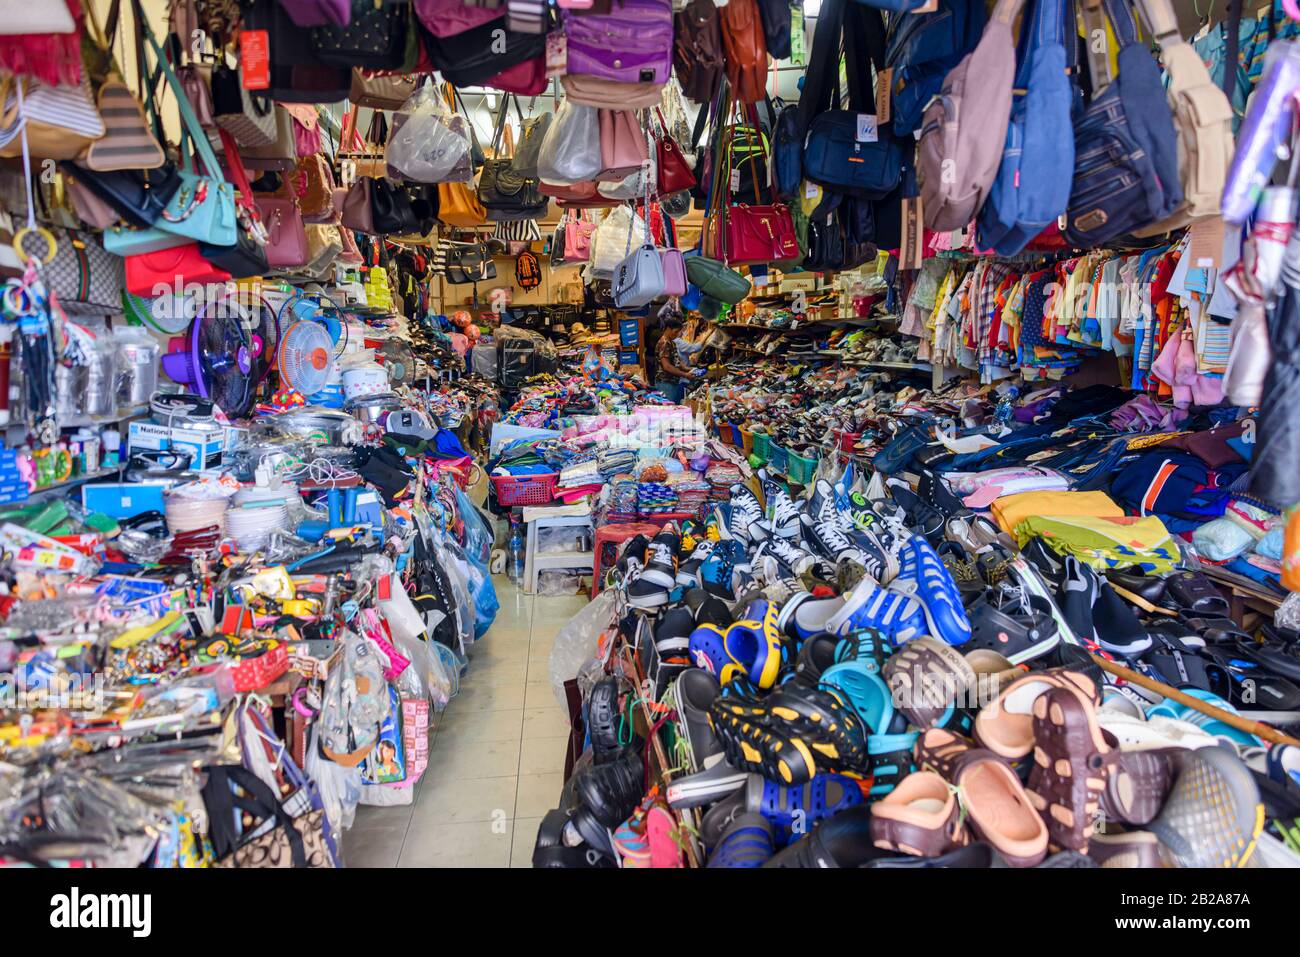 Desorden Desordenado En Una Tienda Por Departamentos De Kohls Con Diversas  Mercancías Al Azar Foto editorial - Imagen de abril, muestra: 276239651